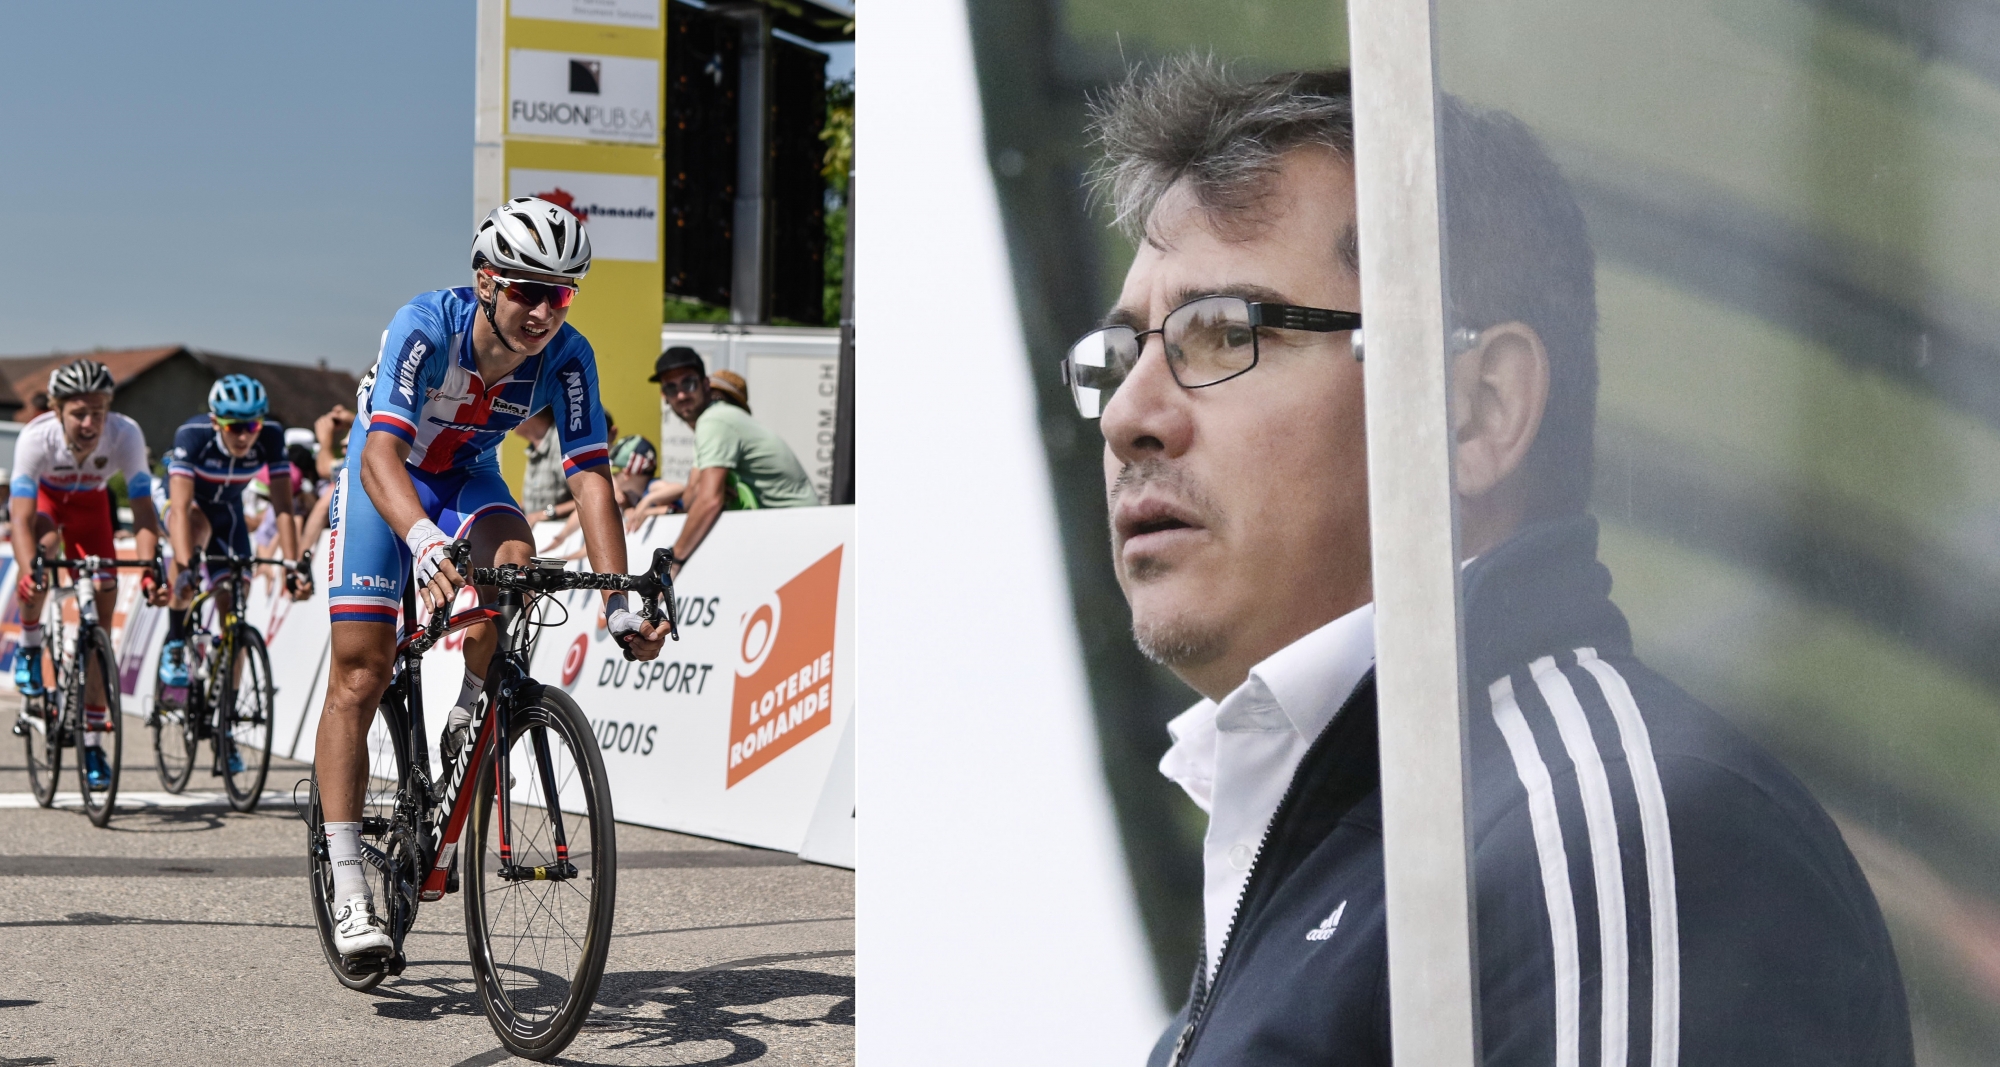 Le Tour du Pays de Vaud cycliste se clôturera dimanche à Tartegnin. Oscar Londono terminera, lui, son aventure avec le Stade Nyonnais.